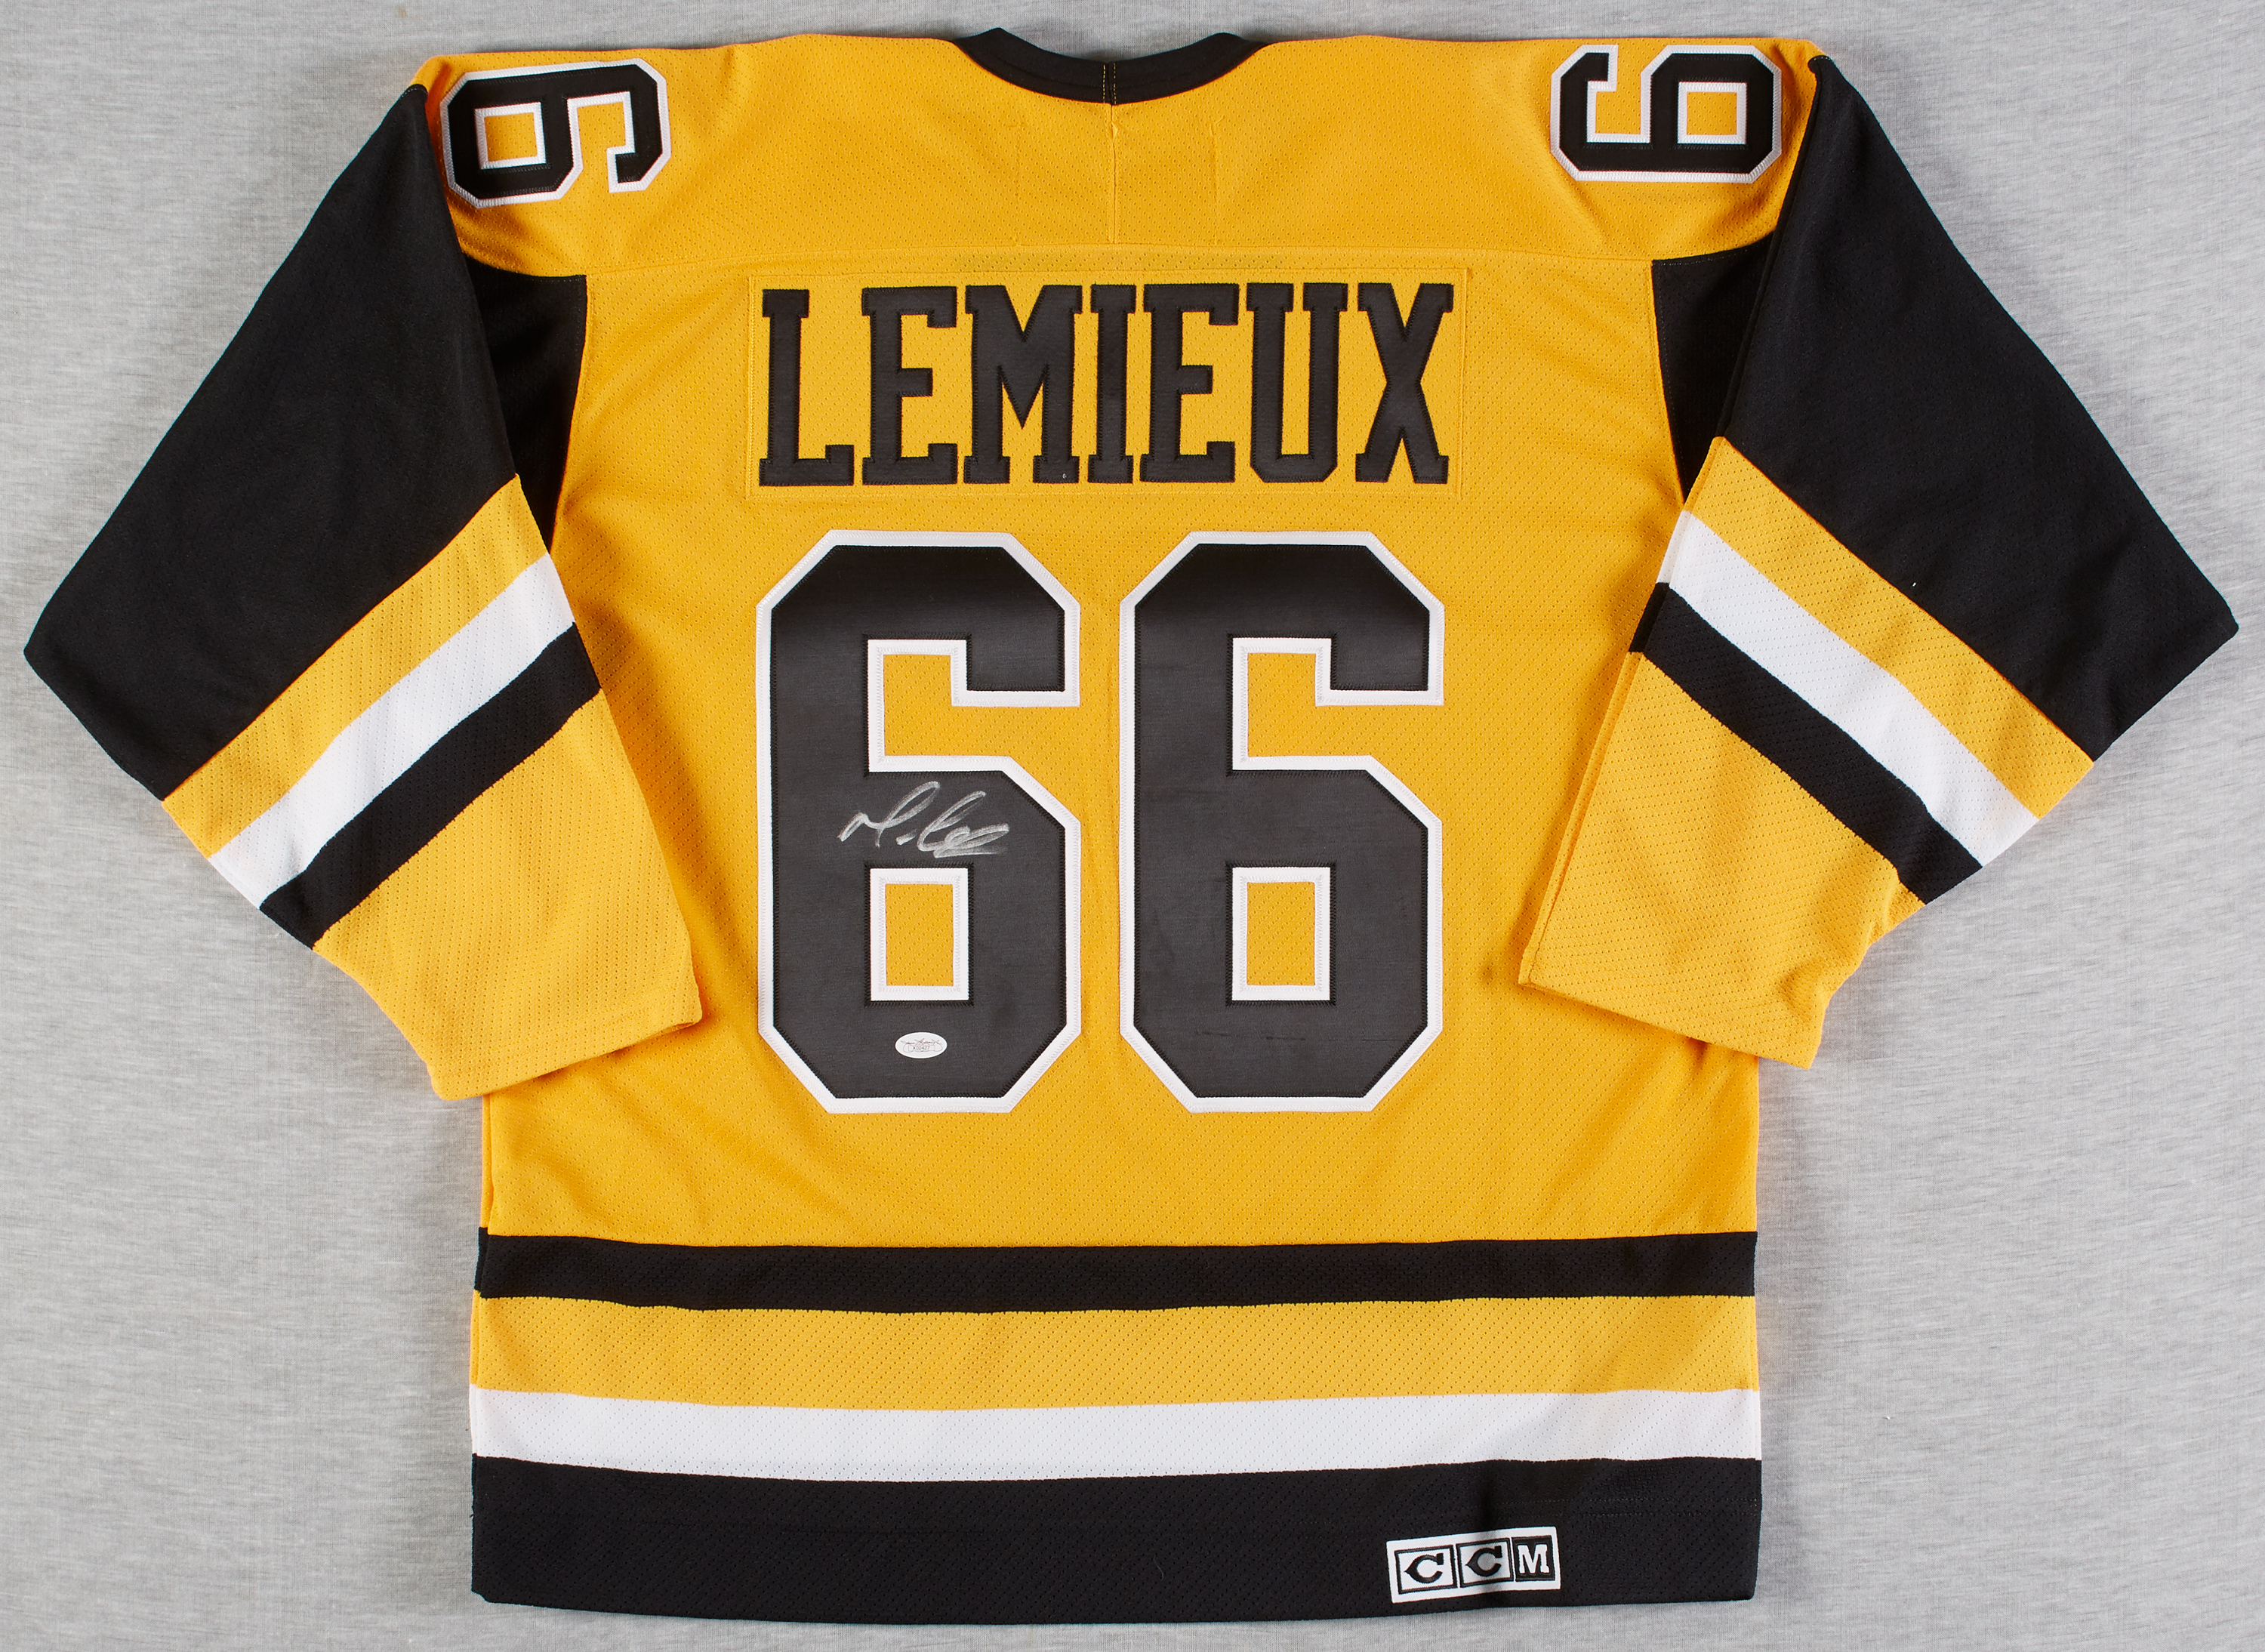 lemieux signed jersey